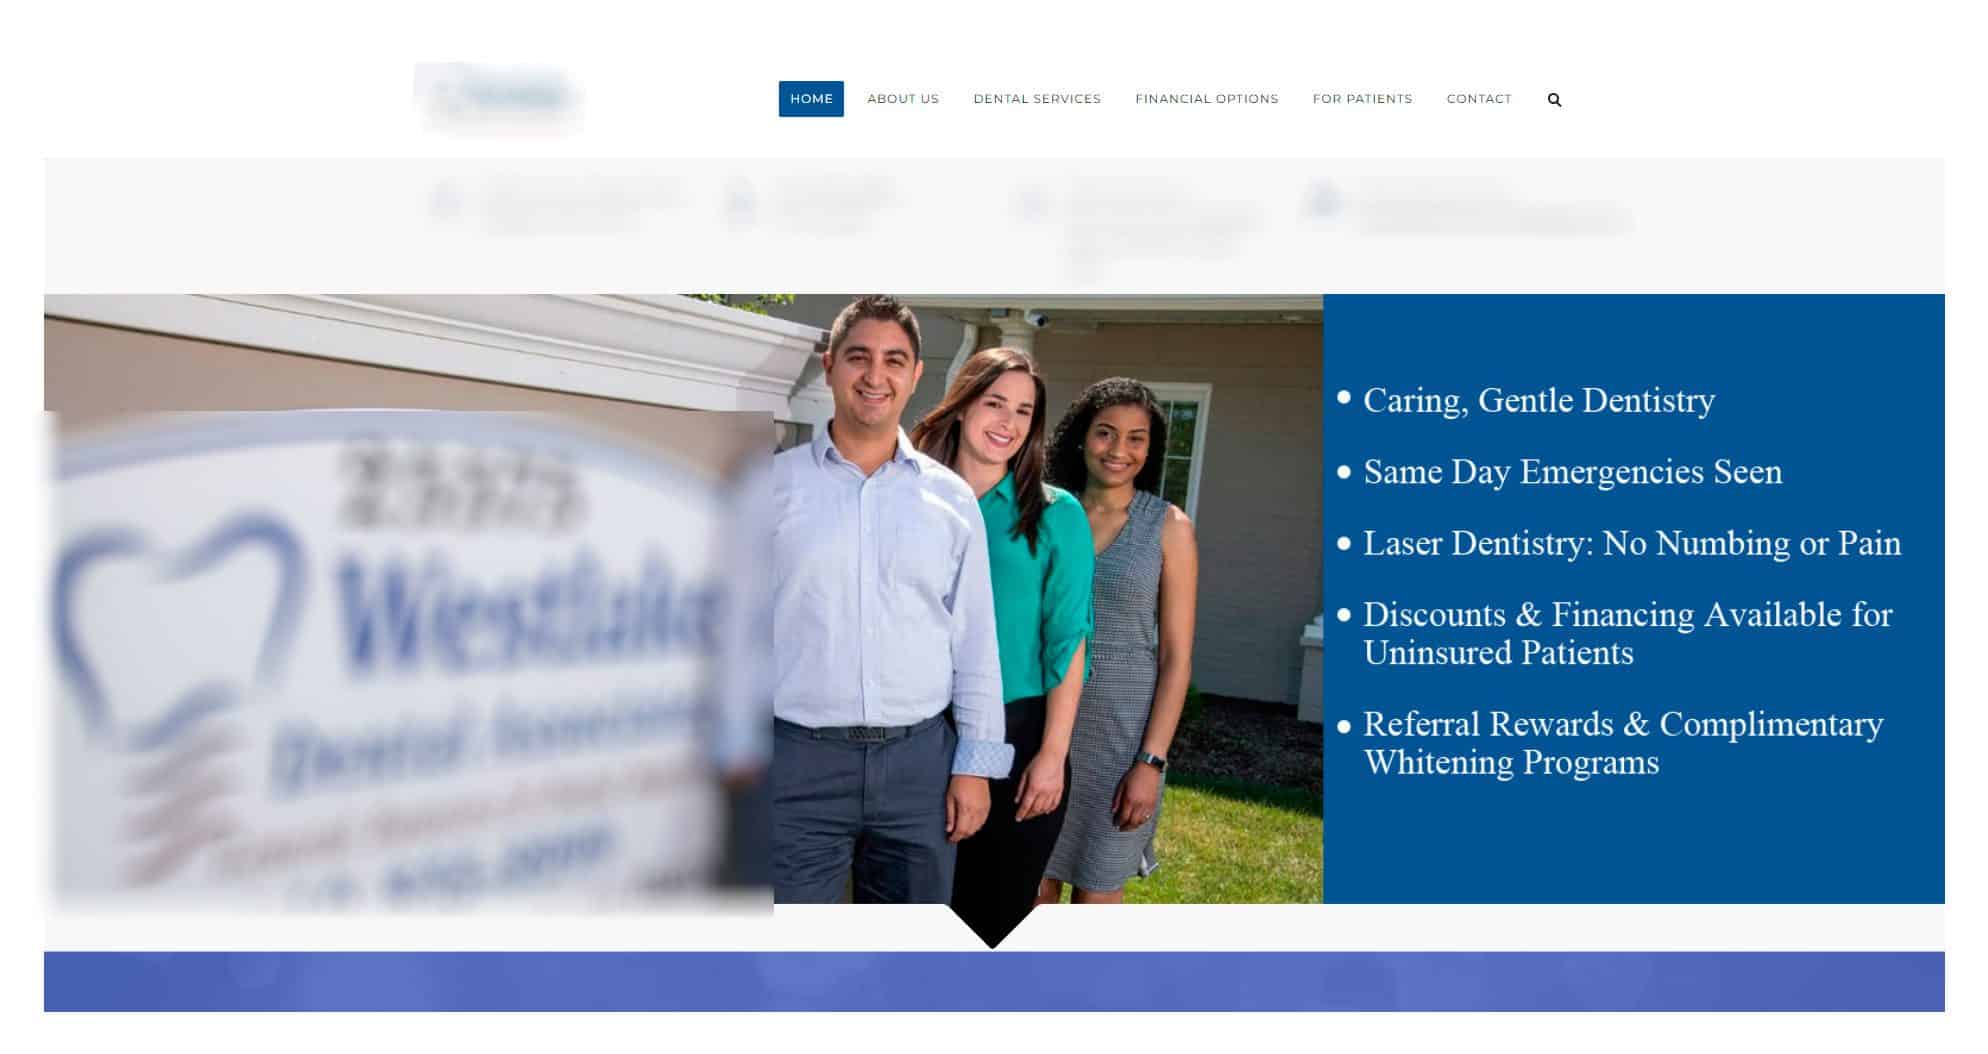 Dental Services Provider Website Design